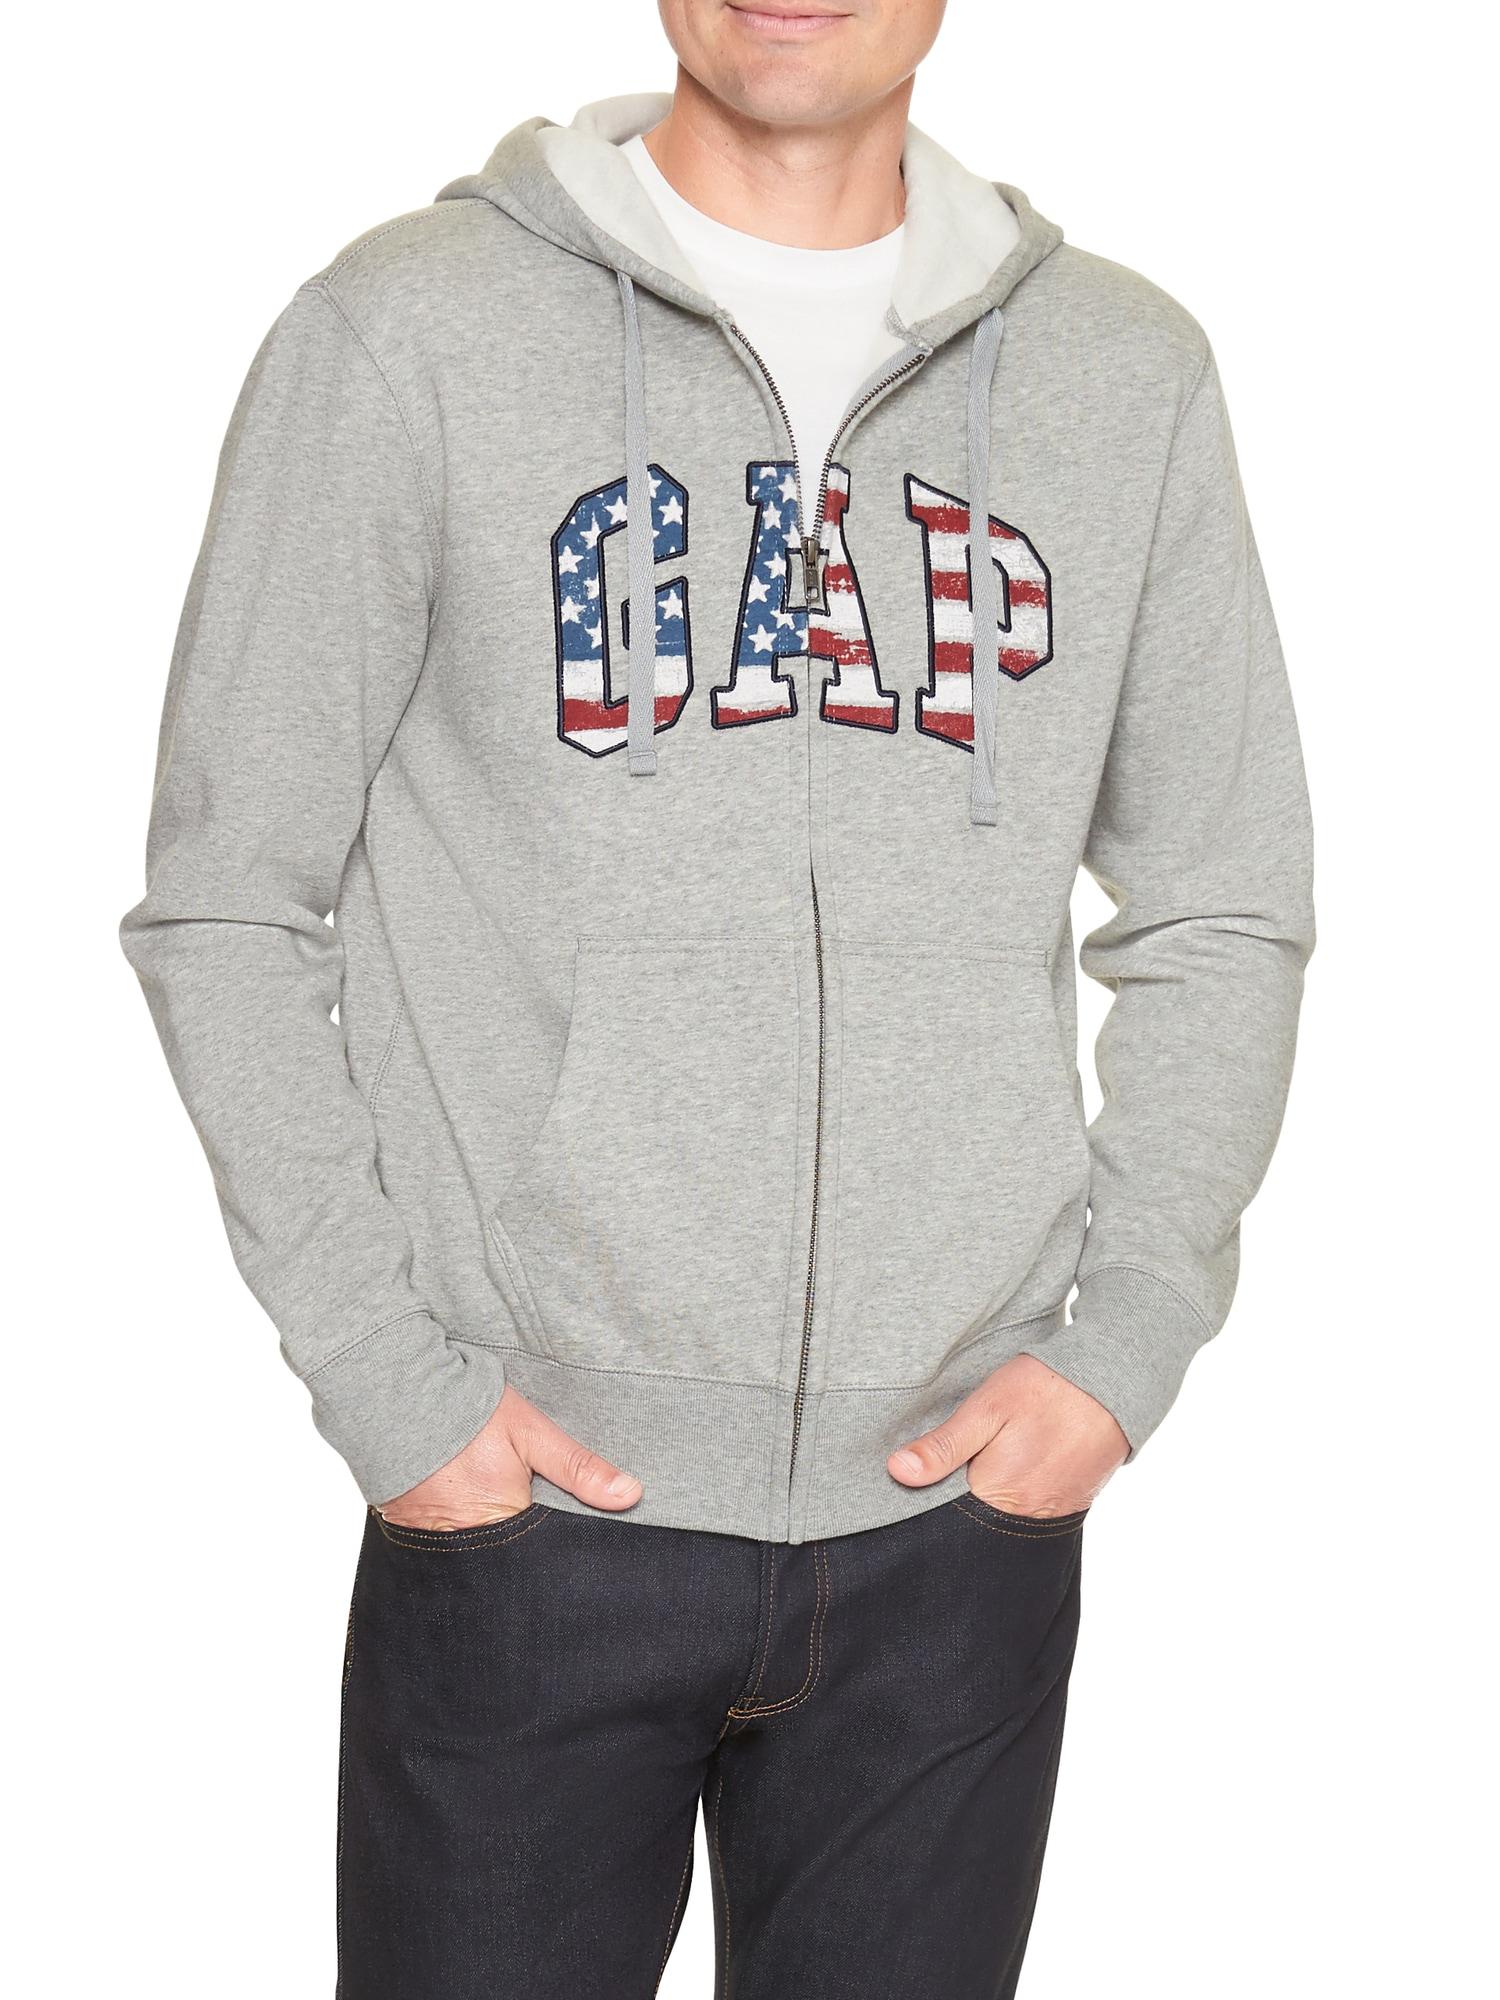 GAP Factory Fleece Flag Arch Logo Zip Hoodie in Light Heather Grey (Gray)  for Men - Lyst